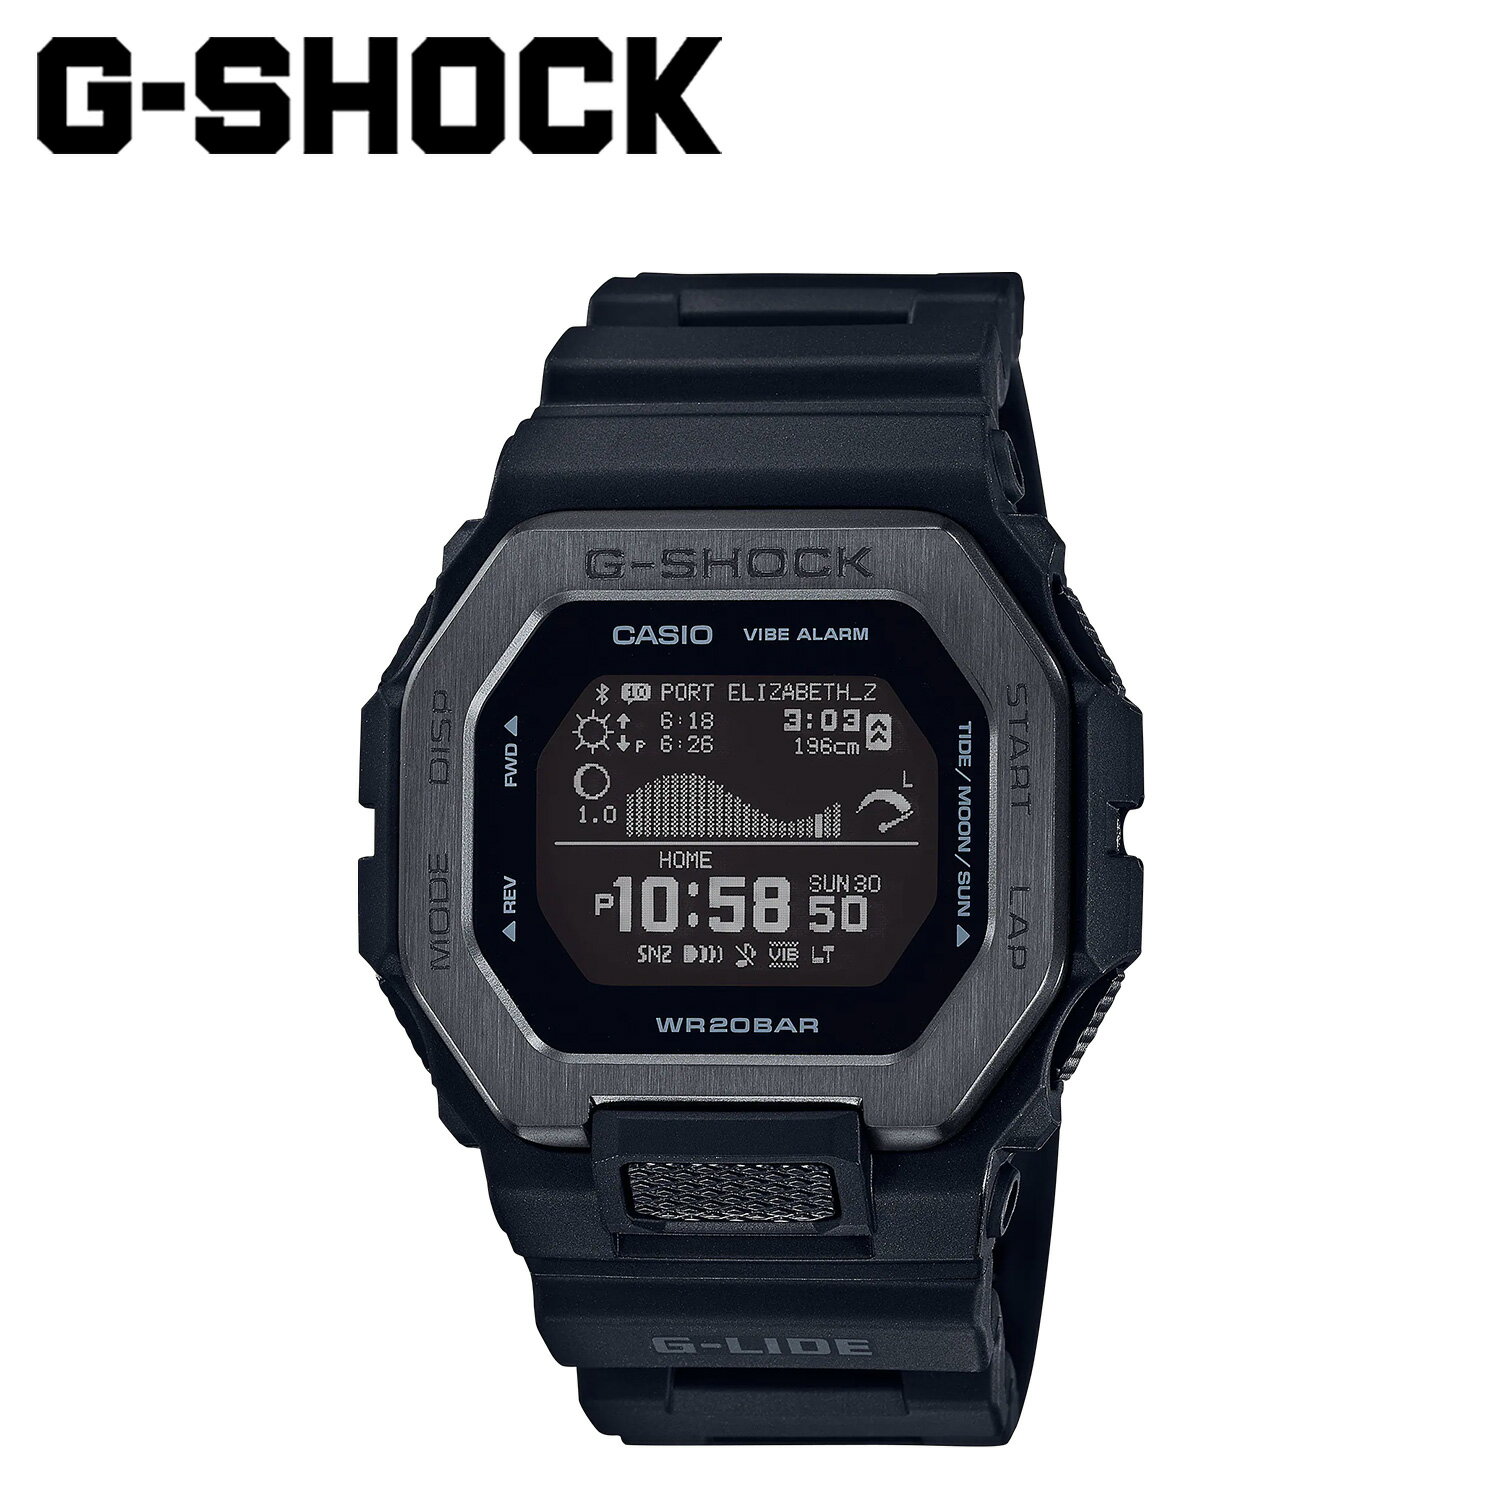 カシオ CASIO G-SHOCK 腕時計 GBX-100NS-1JF Bluetooth連携 GBX-100 SERIES 防水 ジーショック Gショック G-ショック メンズ レディース ブラック 黒